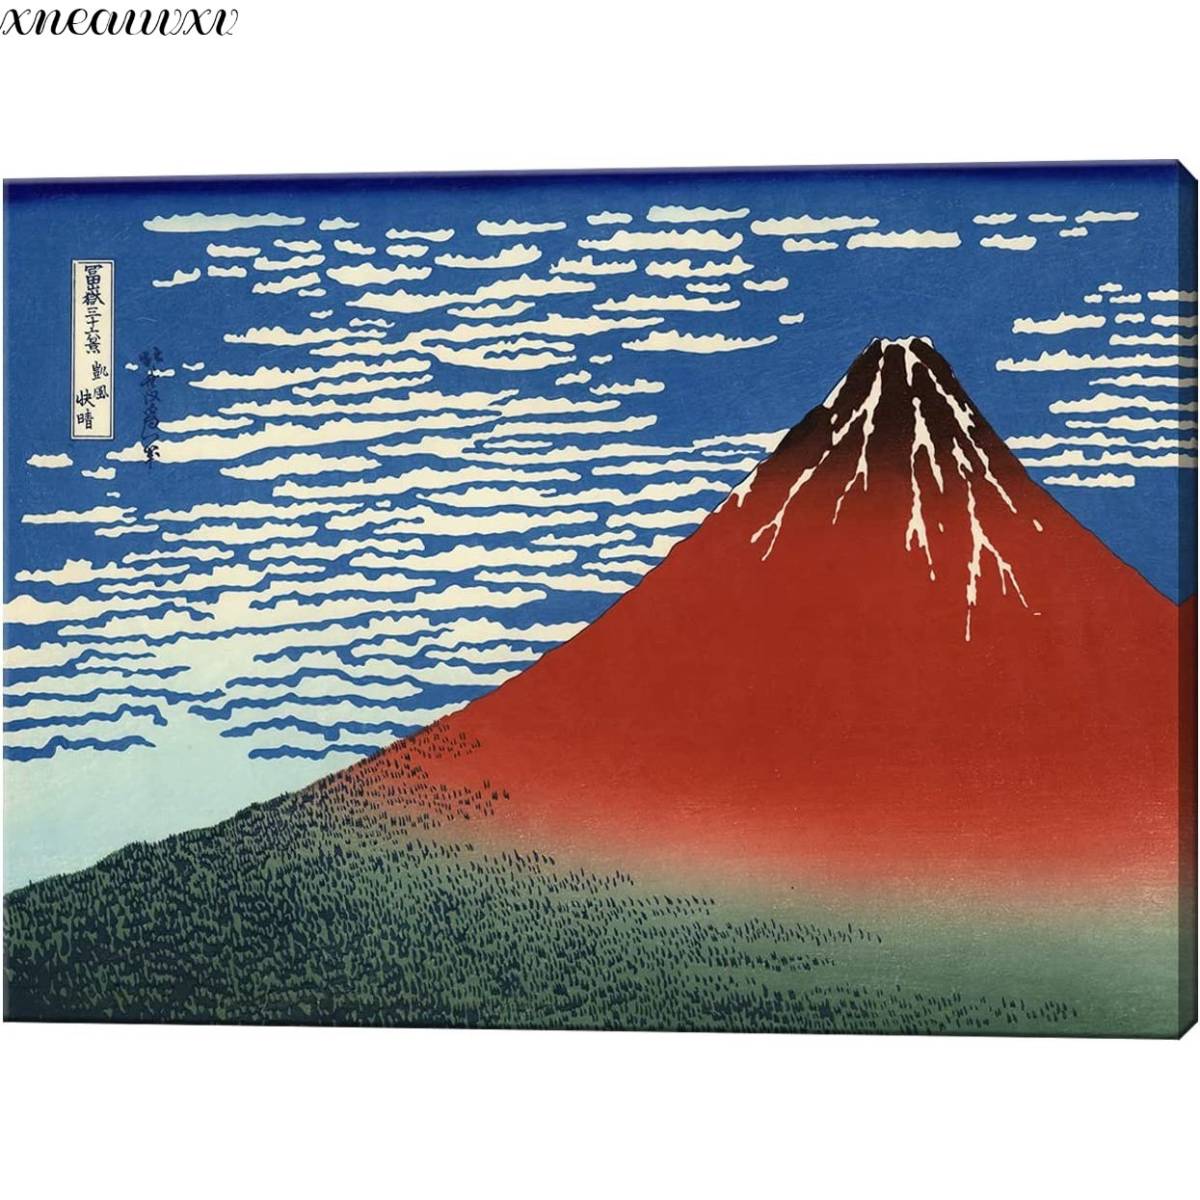 葛饰北斋艺术面板 富士山三十六景 晴朗风再现 壮观景观艺术 日本装饰 古典自然风光 海画 室内艺术, 绘画, 浮世绘, 打印, 著名的地方图片